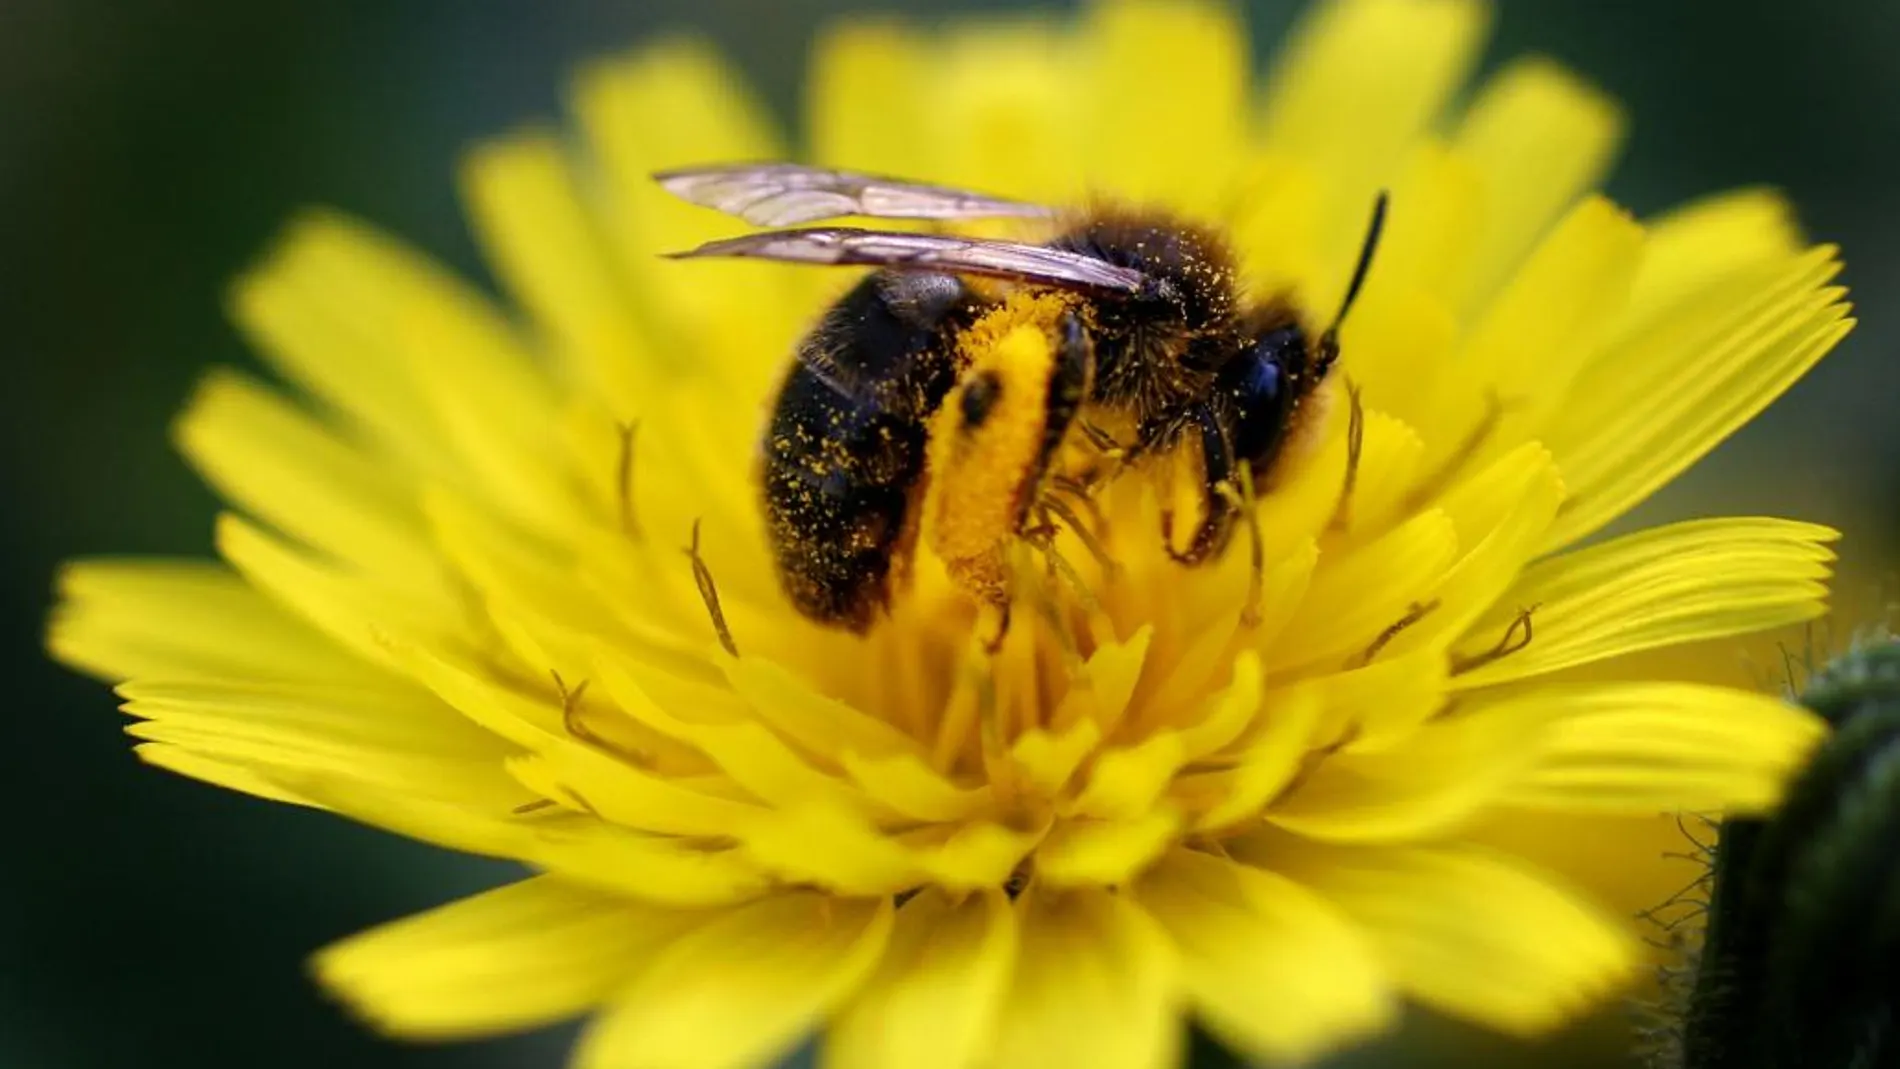 La exposición a los neonicotinoides, componentes de algunos insecticidas que se usan en agricultura, afecta negativamente a la salud de las abejas y abejorros